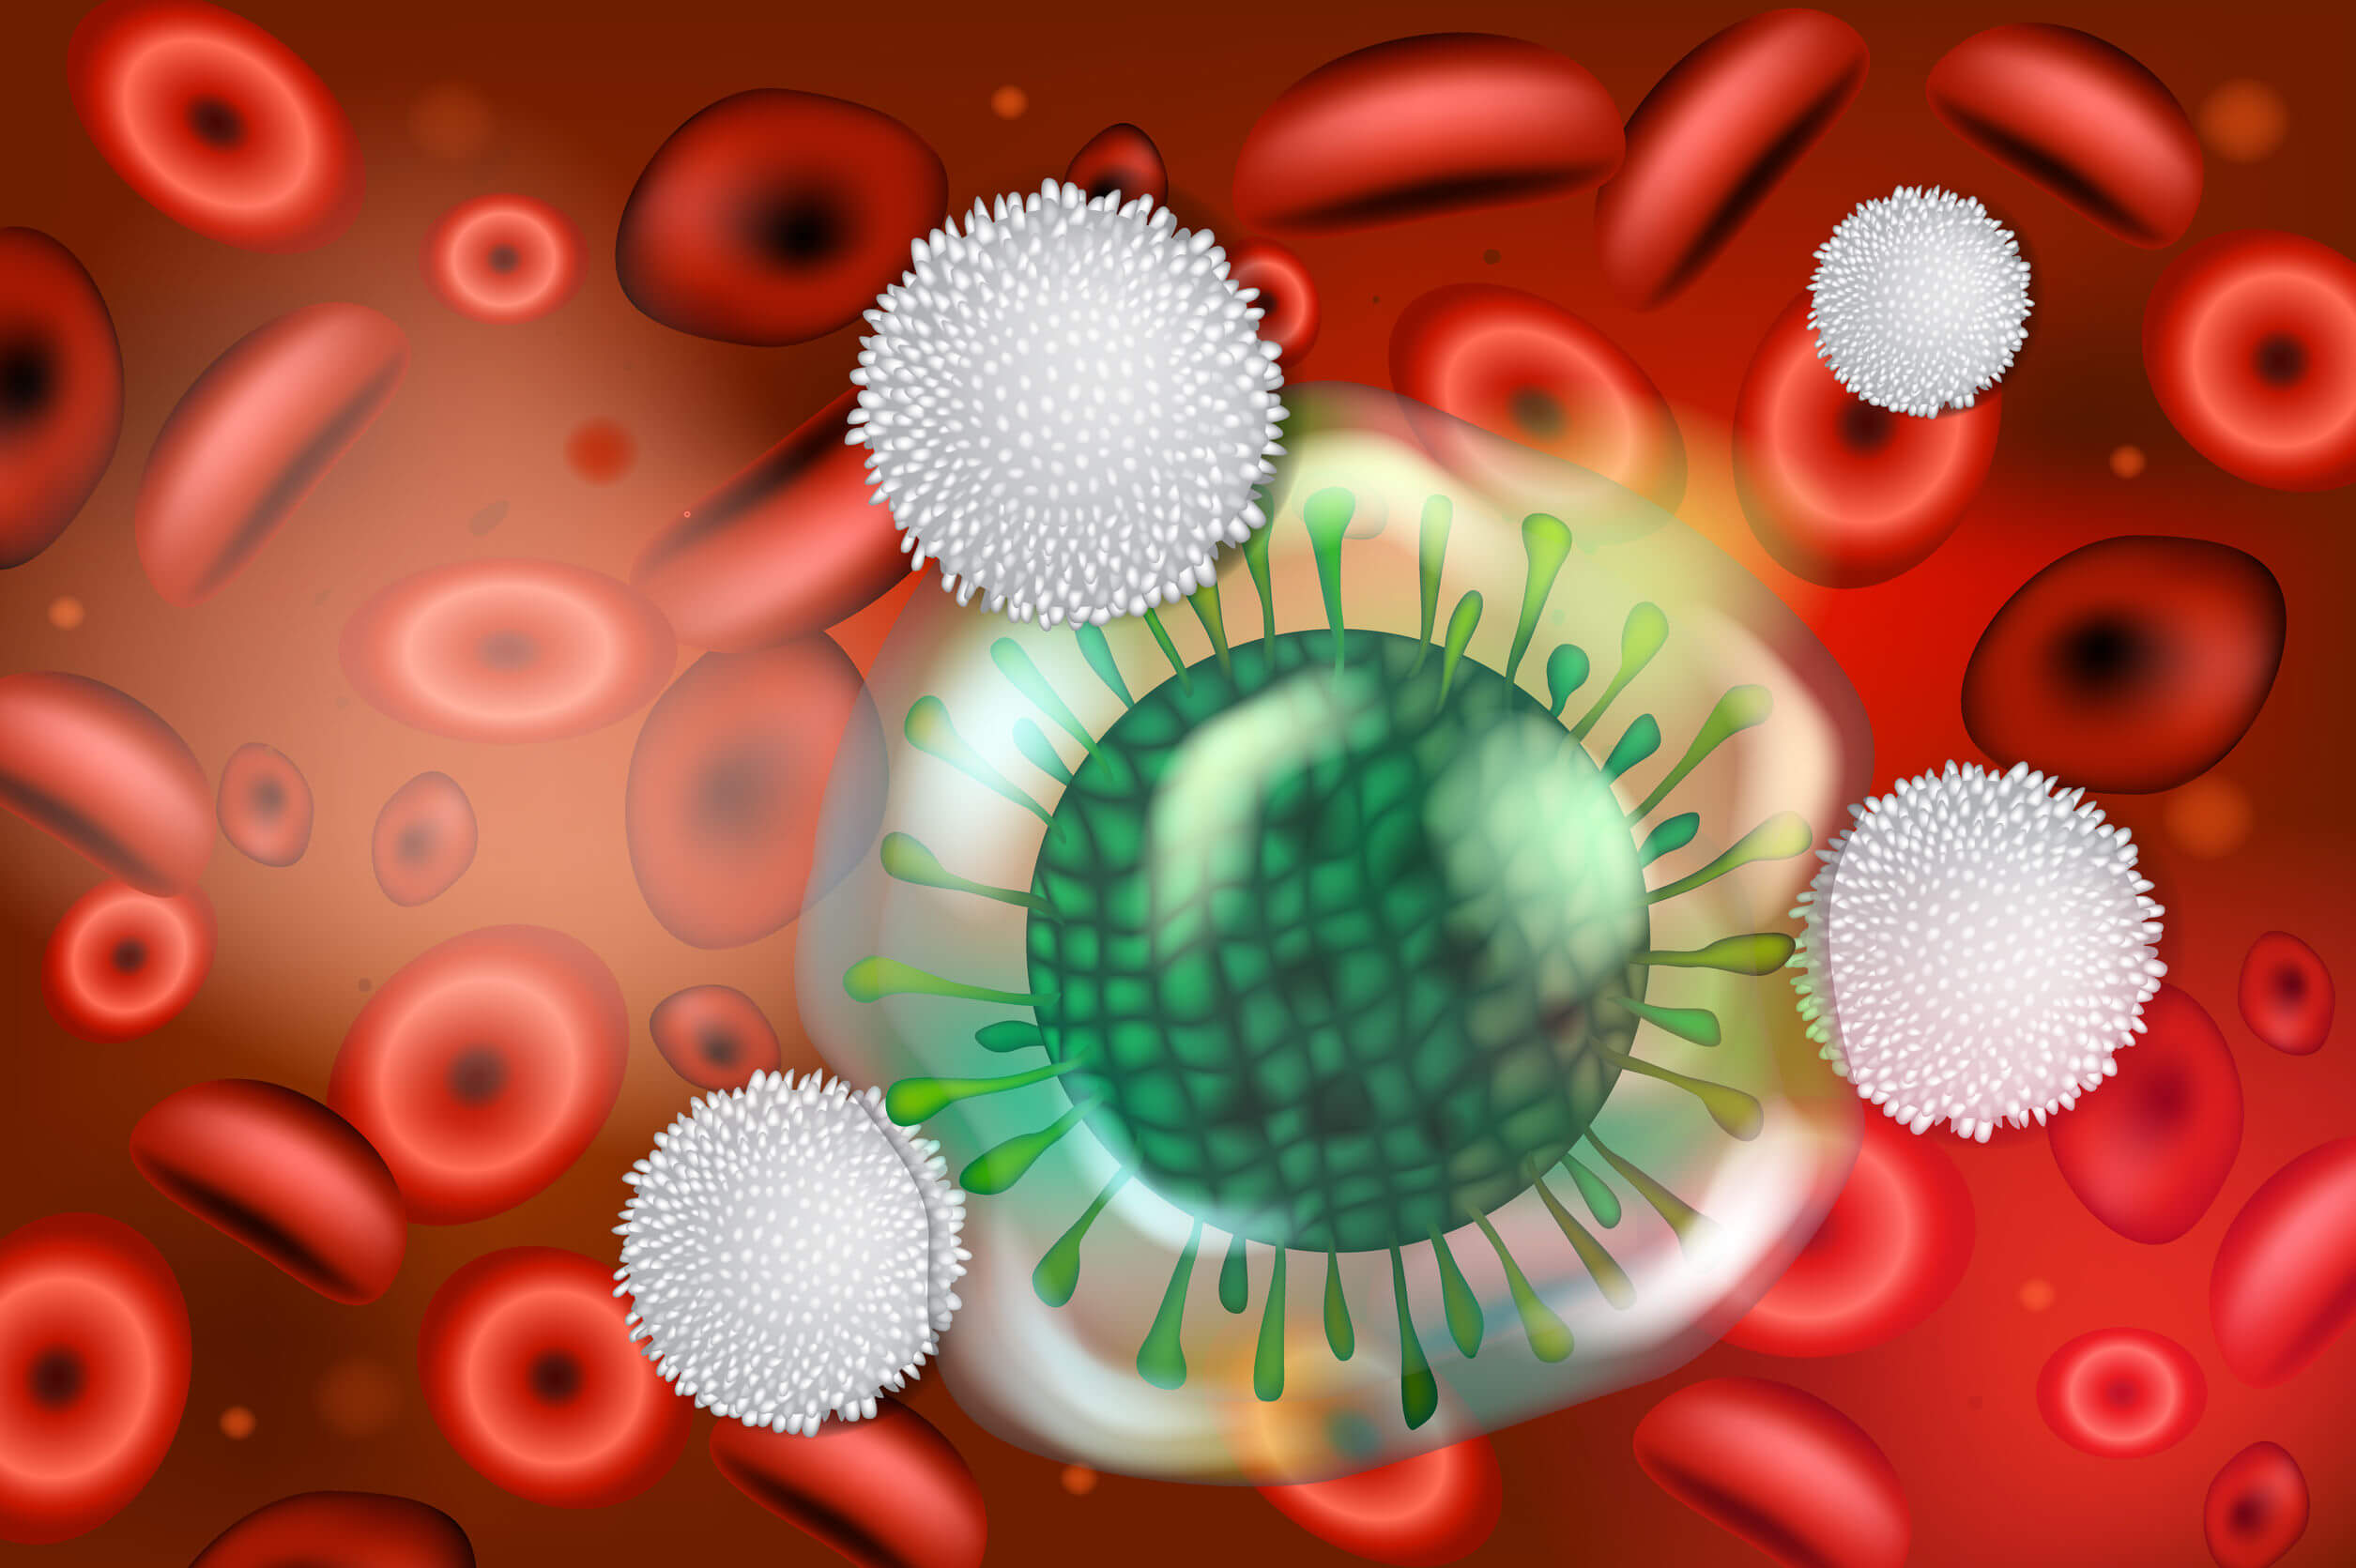 Le cause e i fattori di rischio dell'anafilassi includono aspetti legati al sistema immunitario